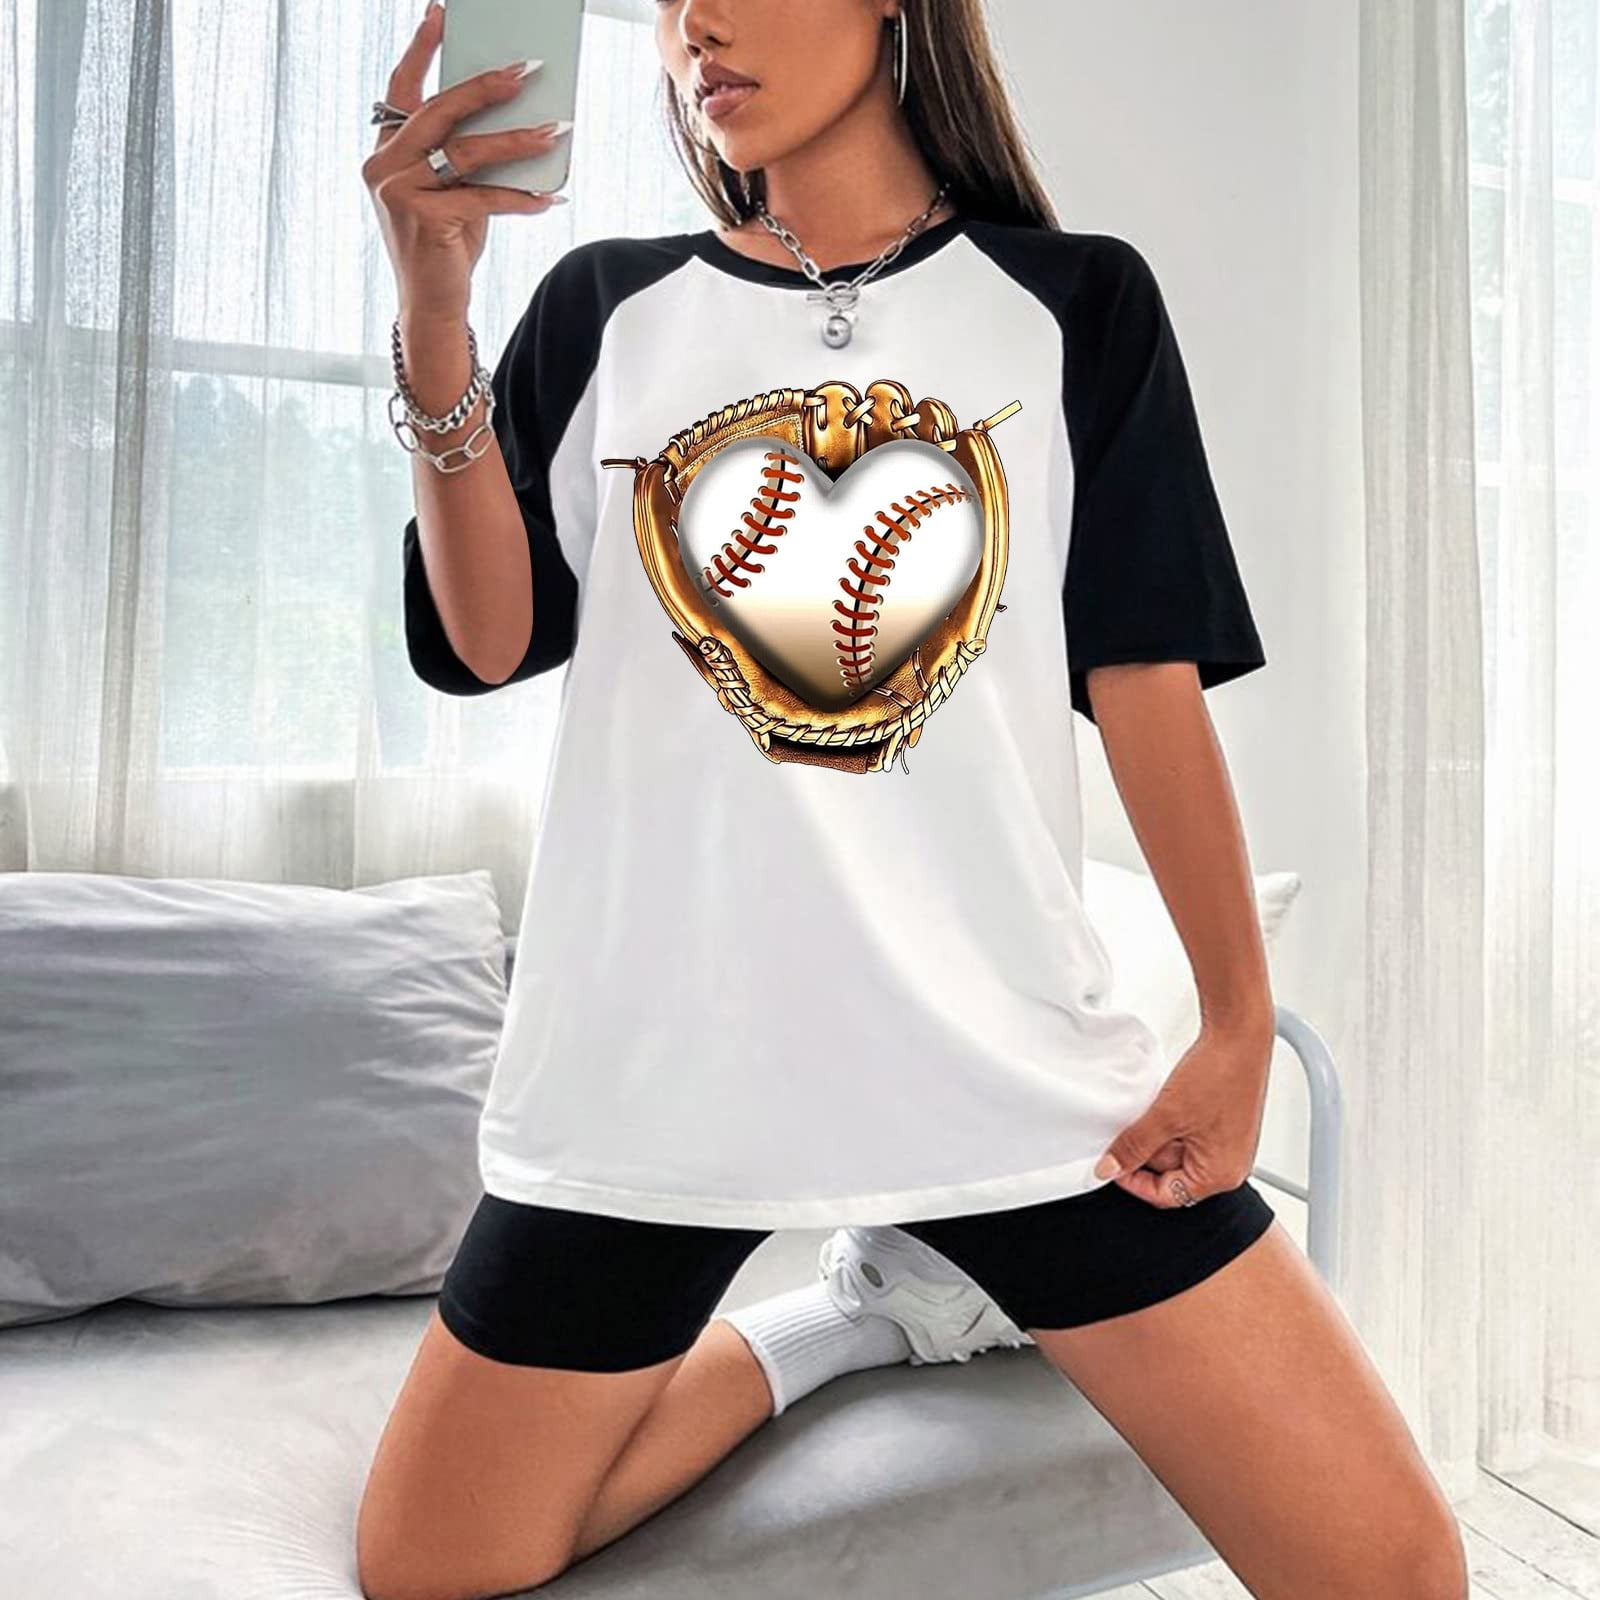 womens baseball jersey fashion